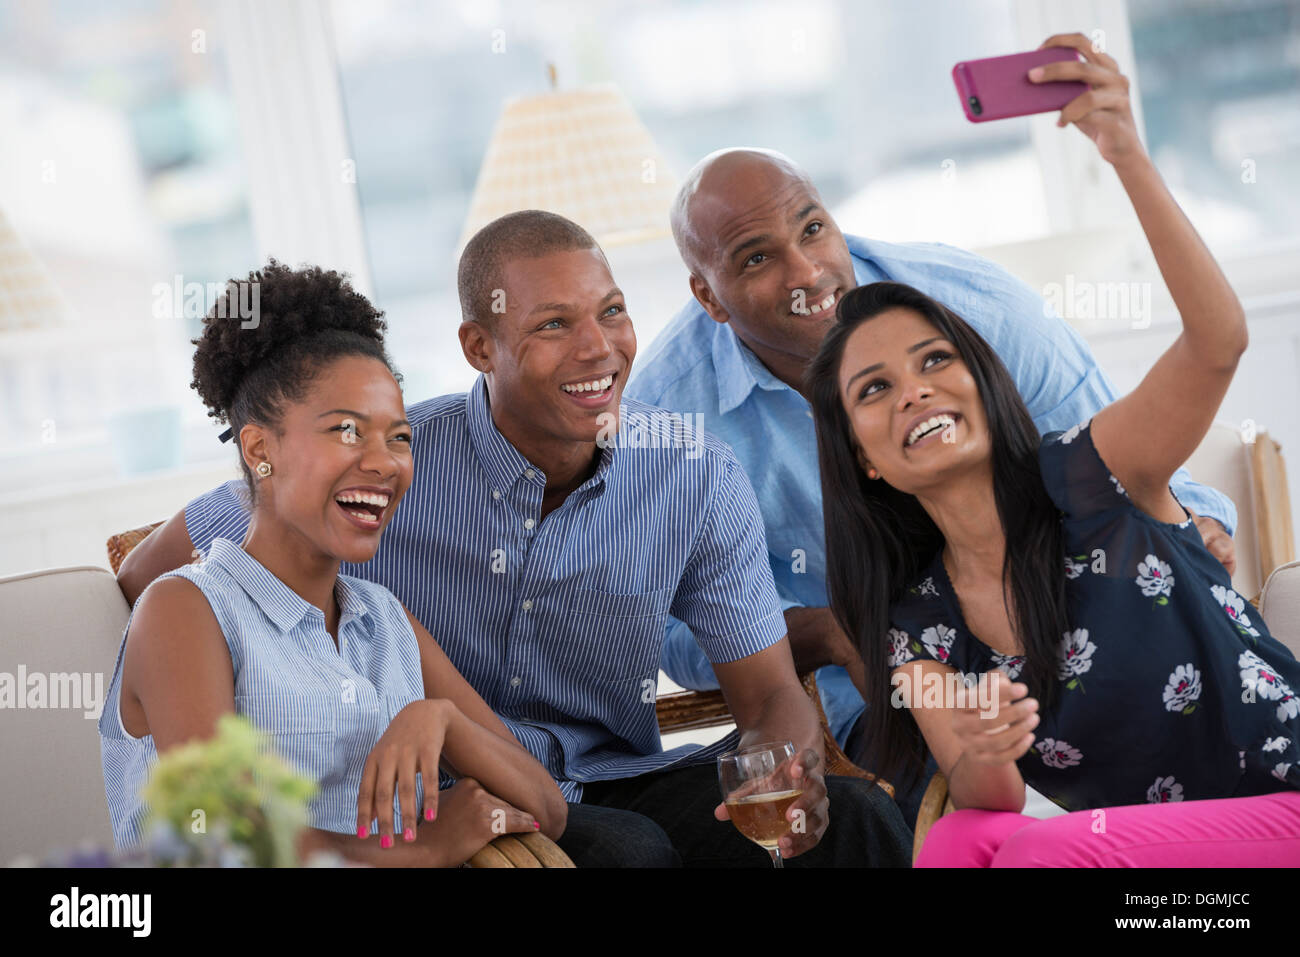 Evento di Office. Una donna prendendo un selfie del gruppo con una rosa di smart phone. Foto Stock